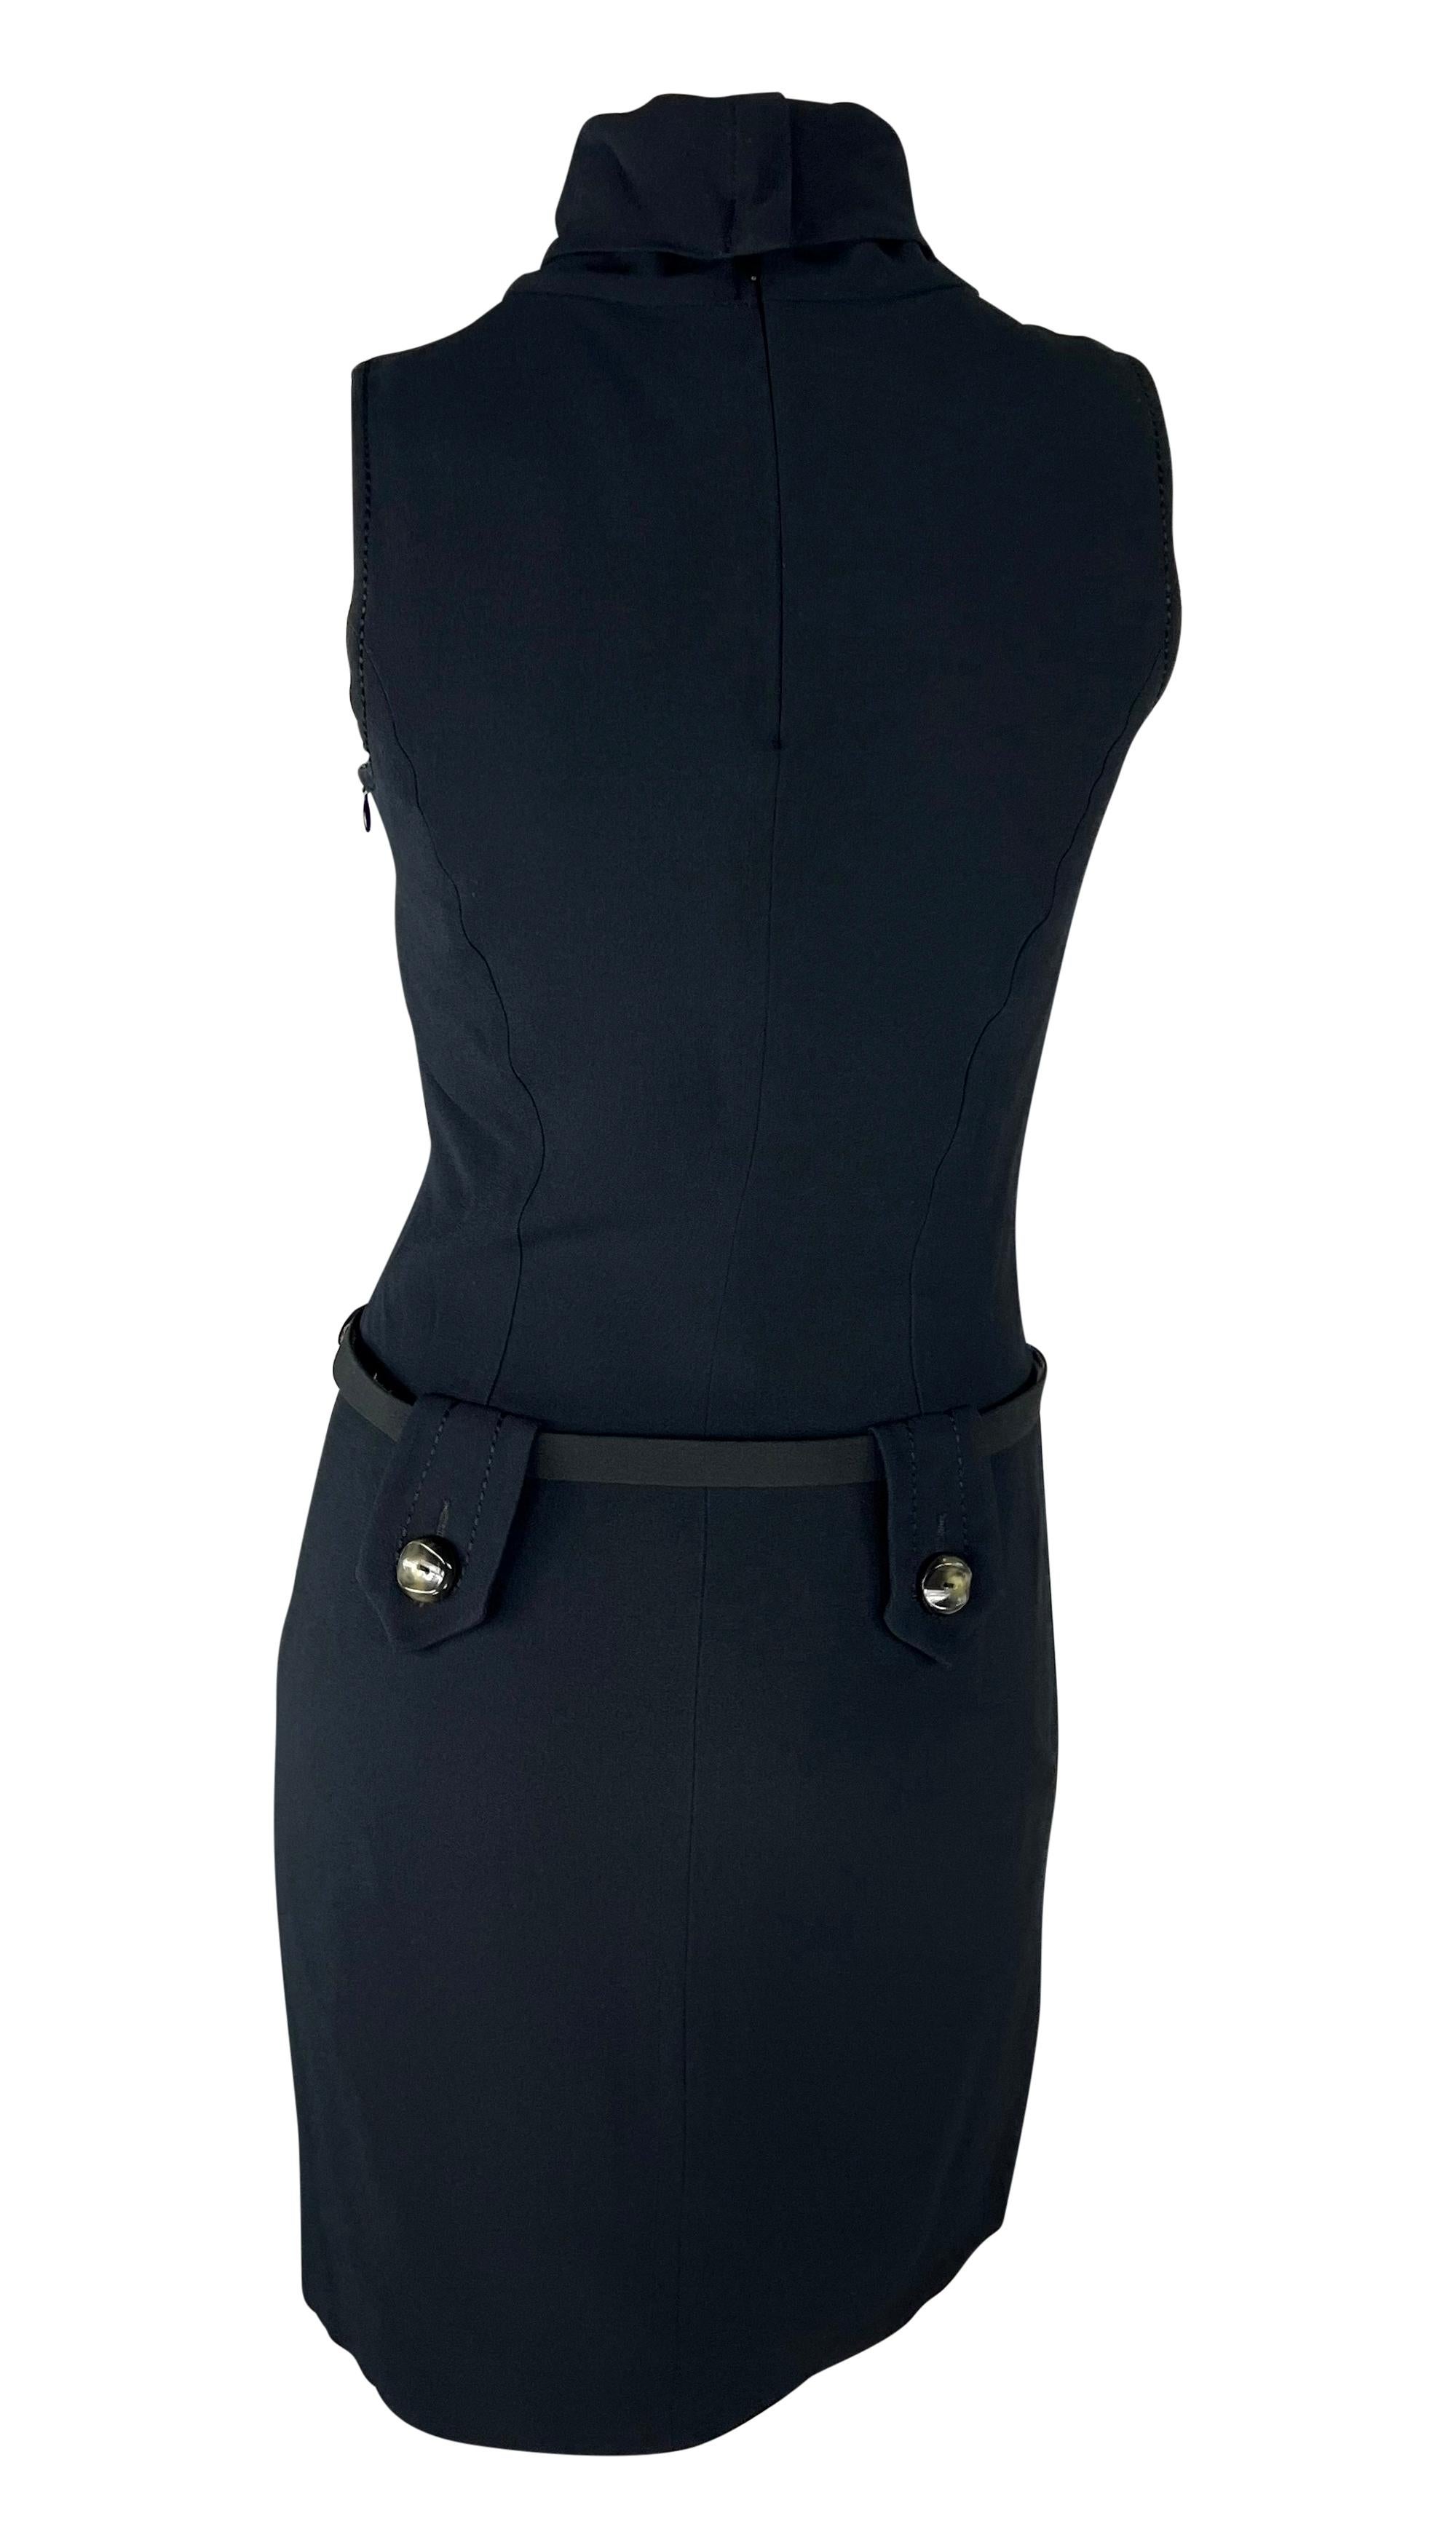 Women's 1990s Paco Rabanne Bond Girl Mock Neck Belted Sleeveless Navy Black Dress For Sale